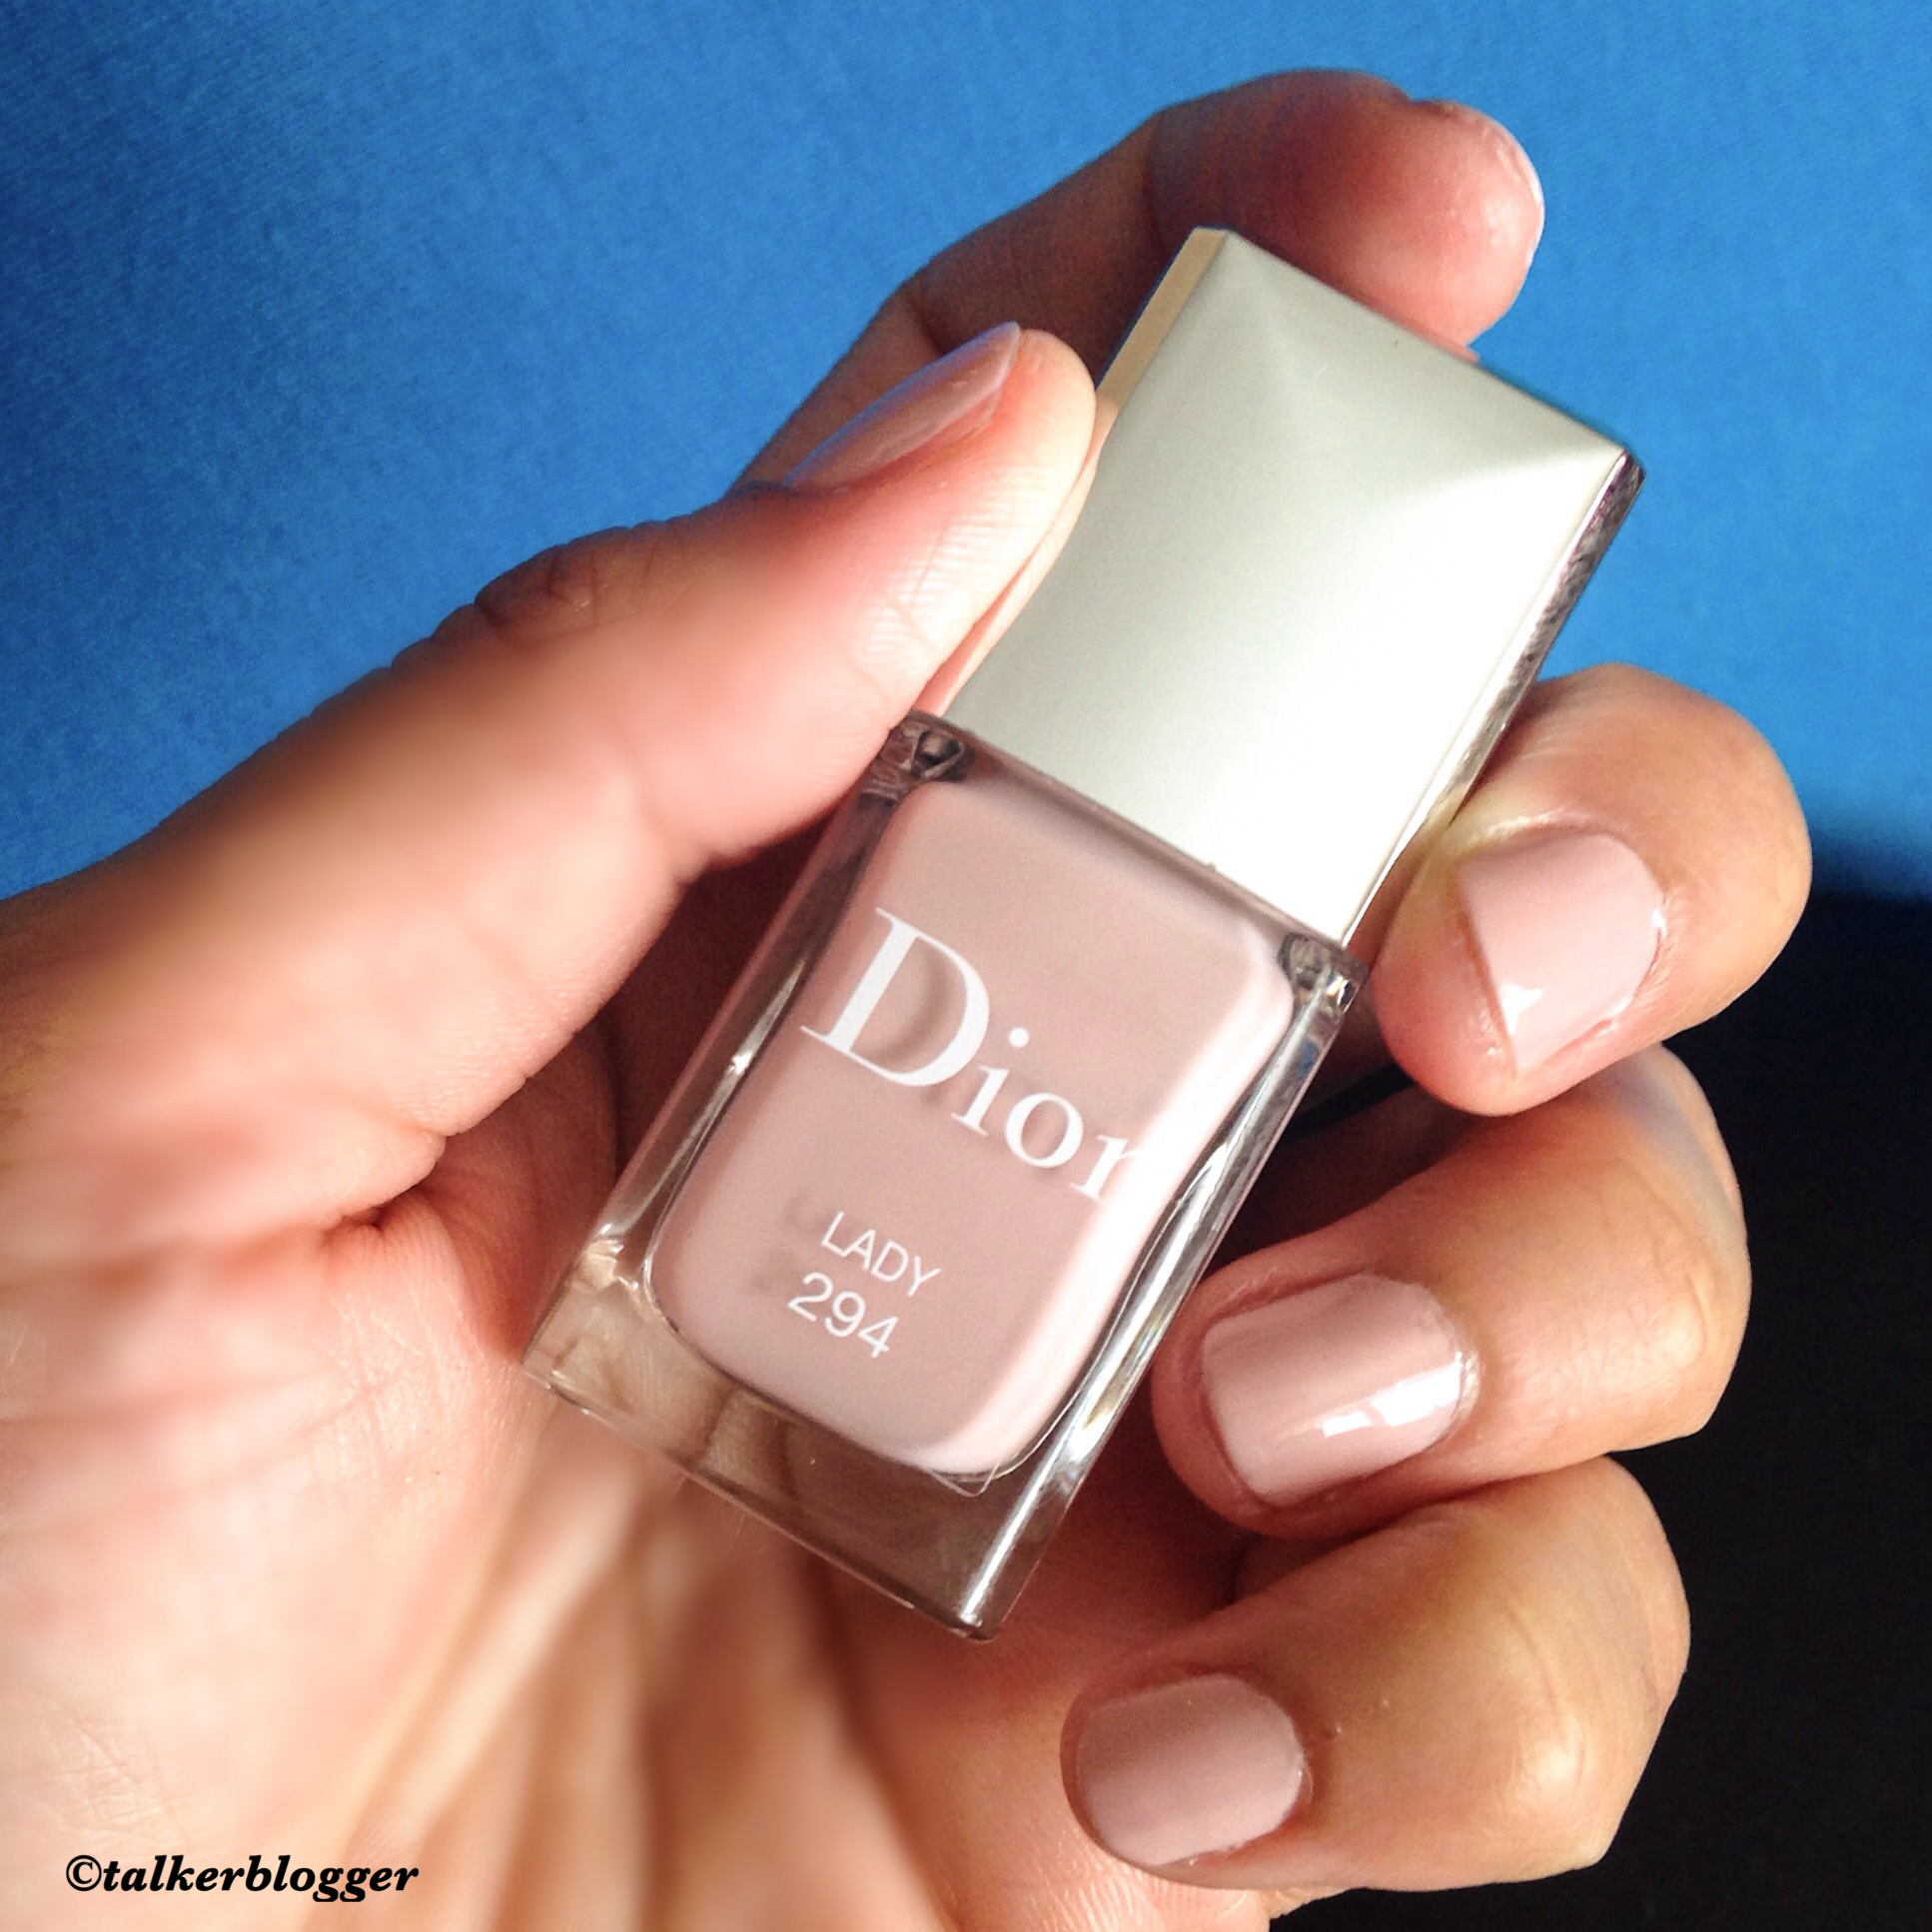 dior lady nail polish